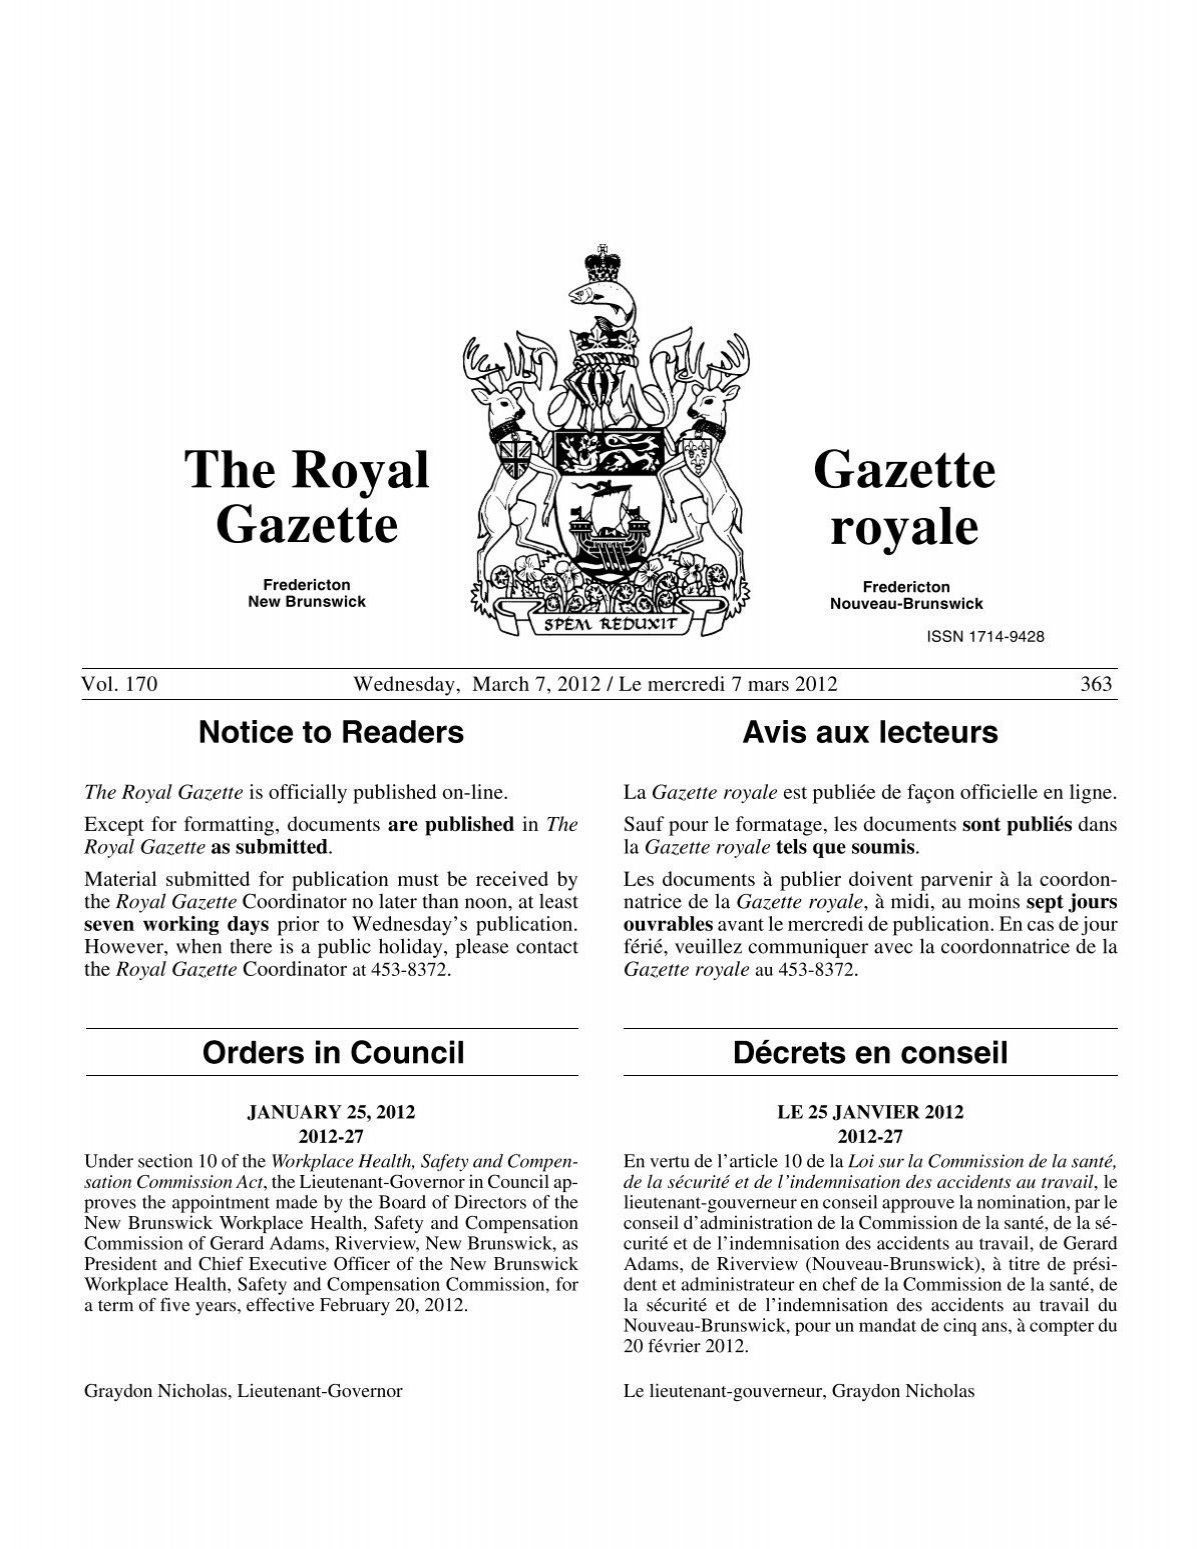 The Royal Gazette / Gazette royale - Gouvernement du Nouveau